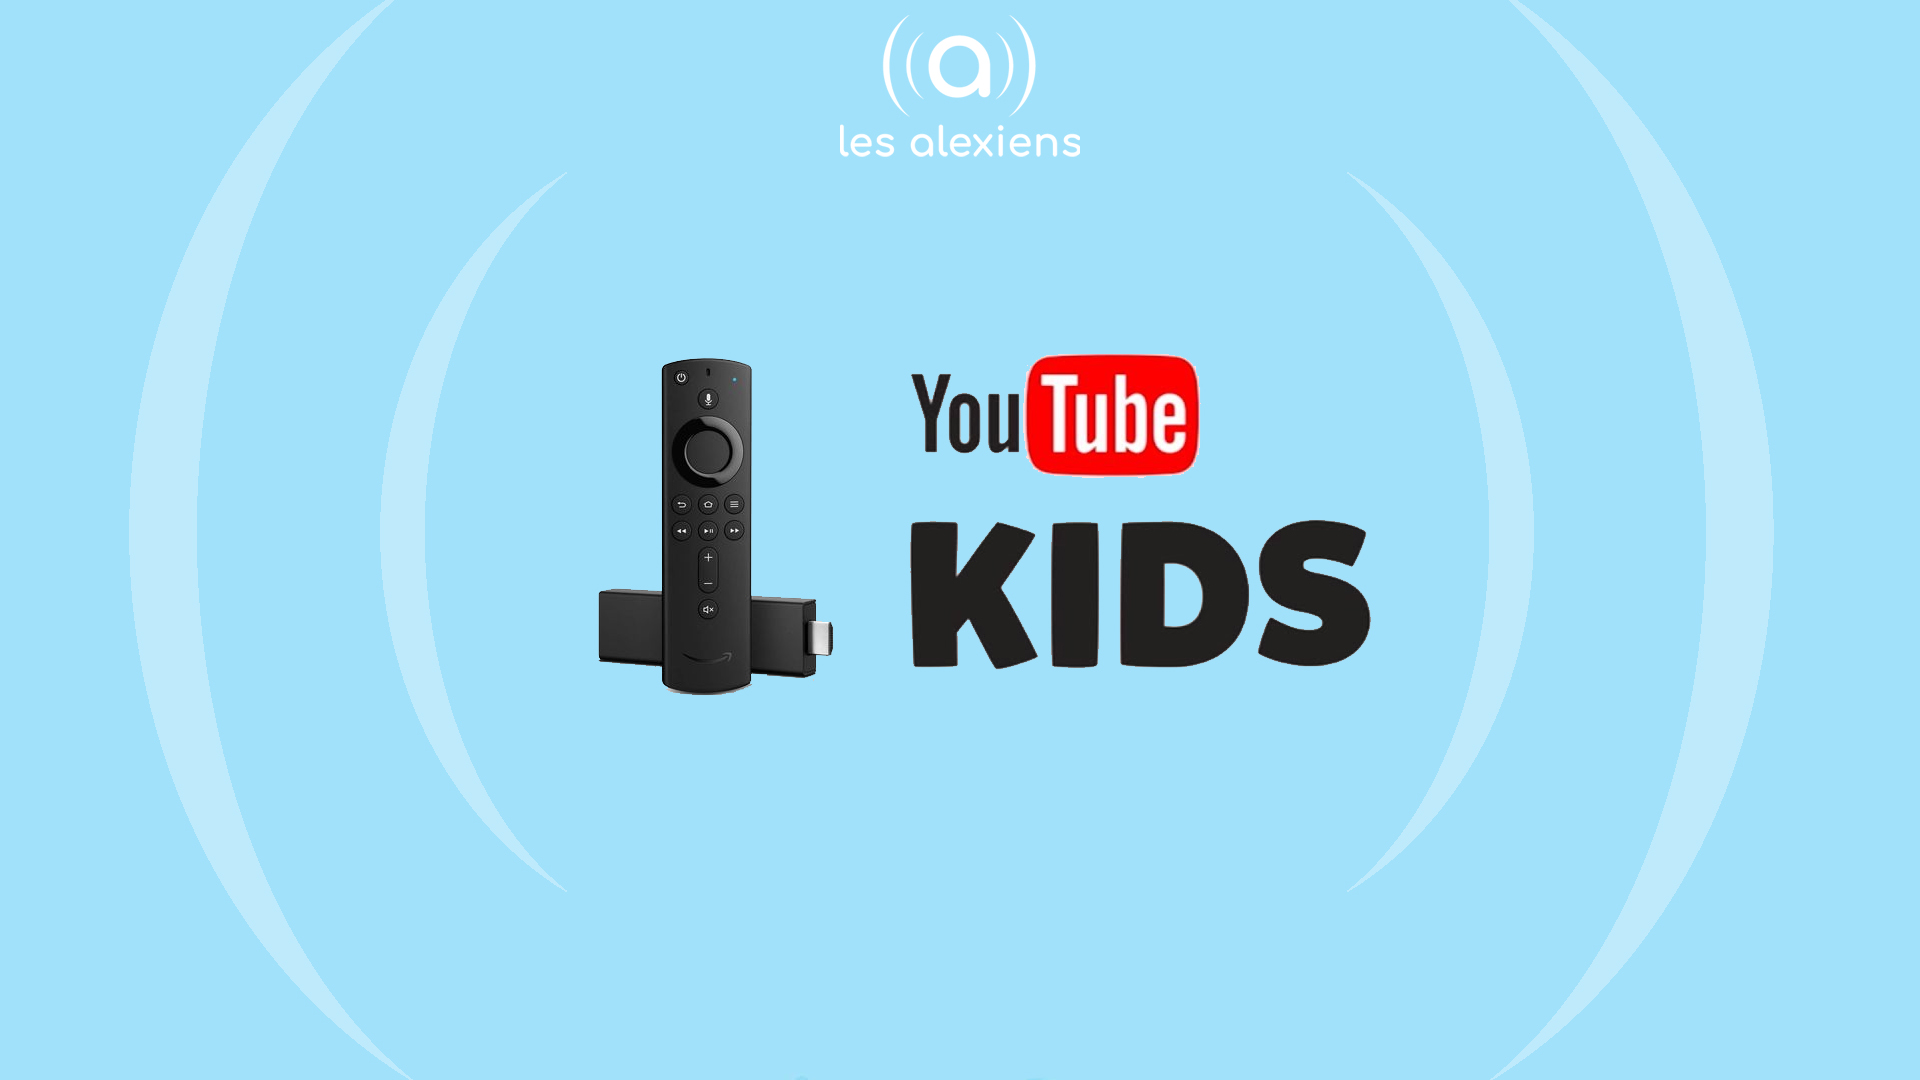 Kids est disponible sur Alexa en France – Les Alexiens